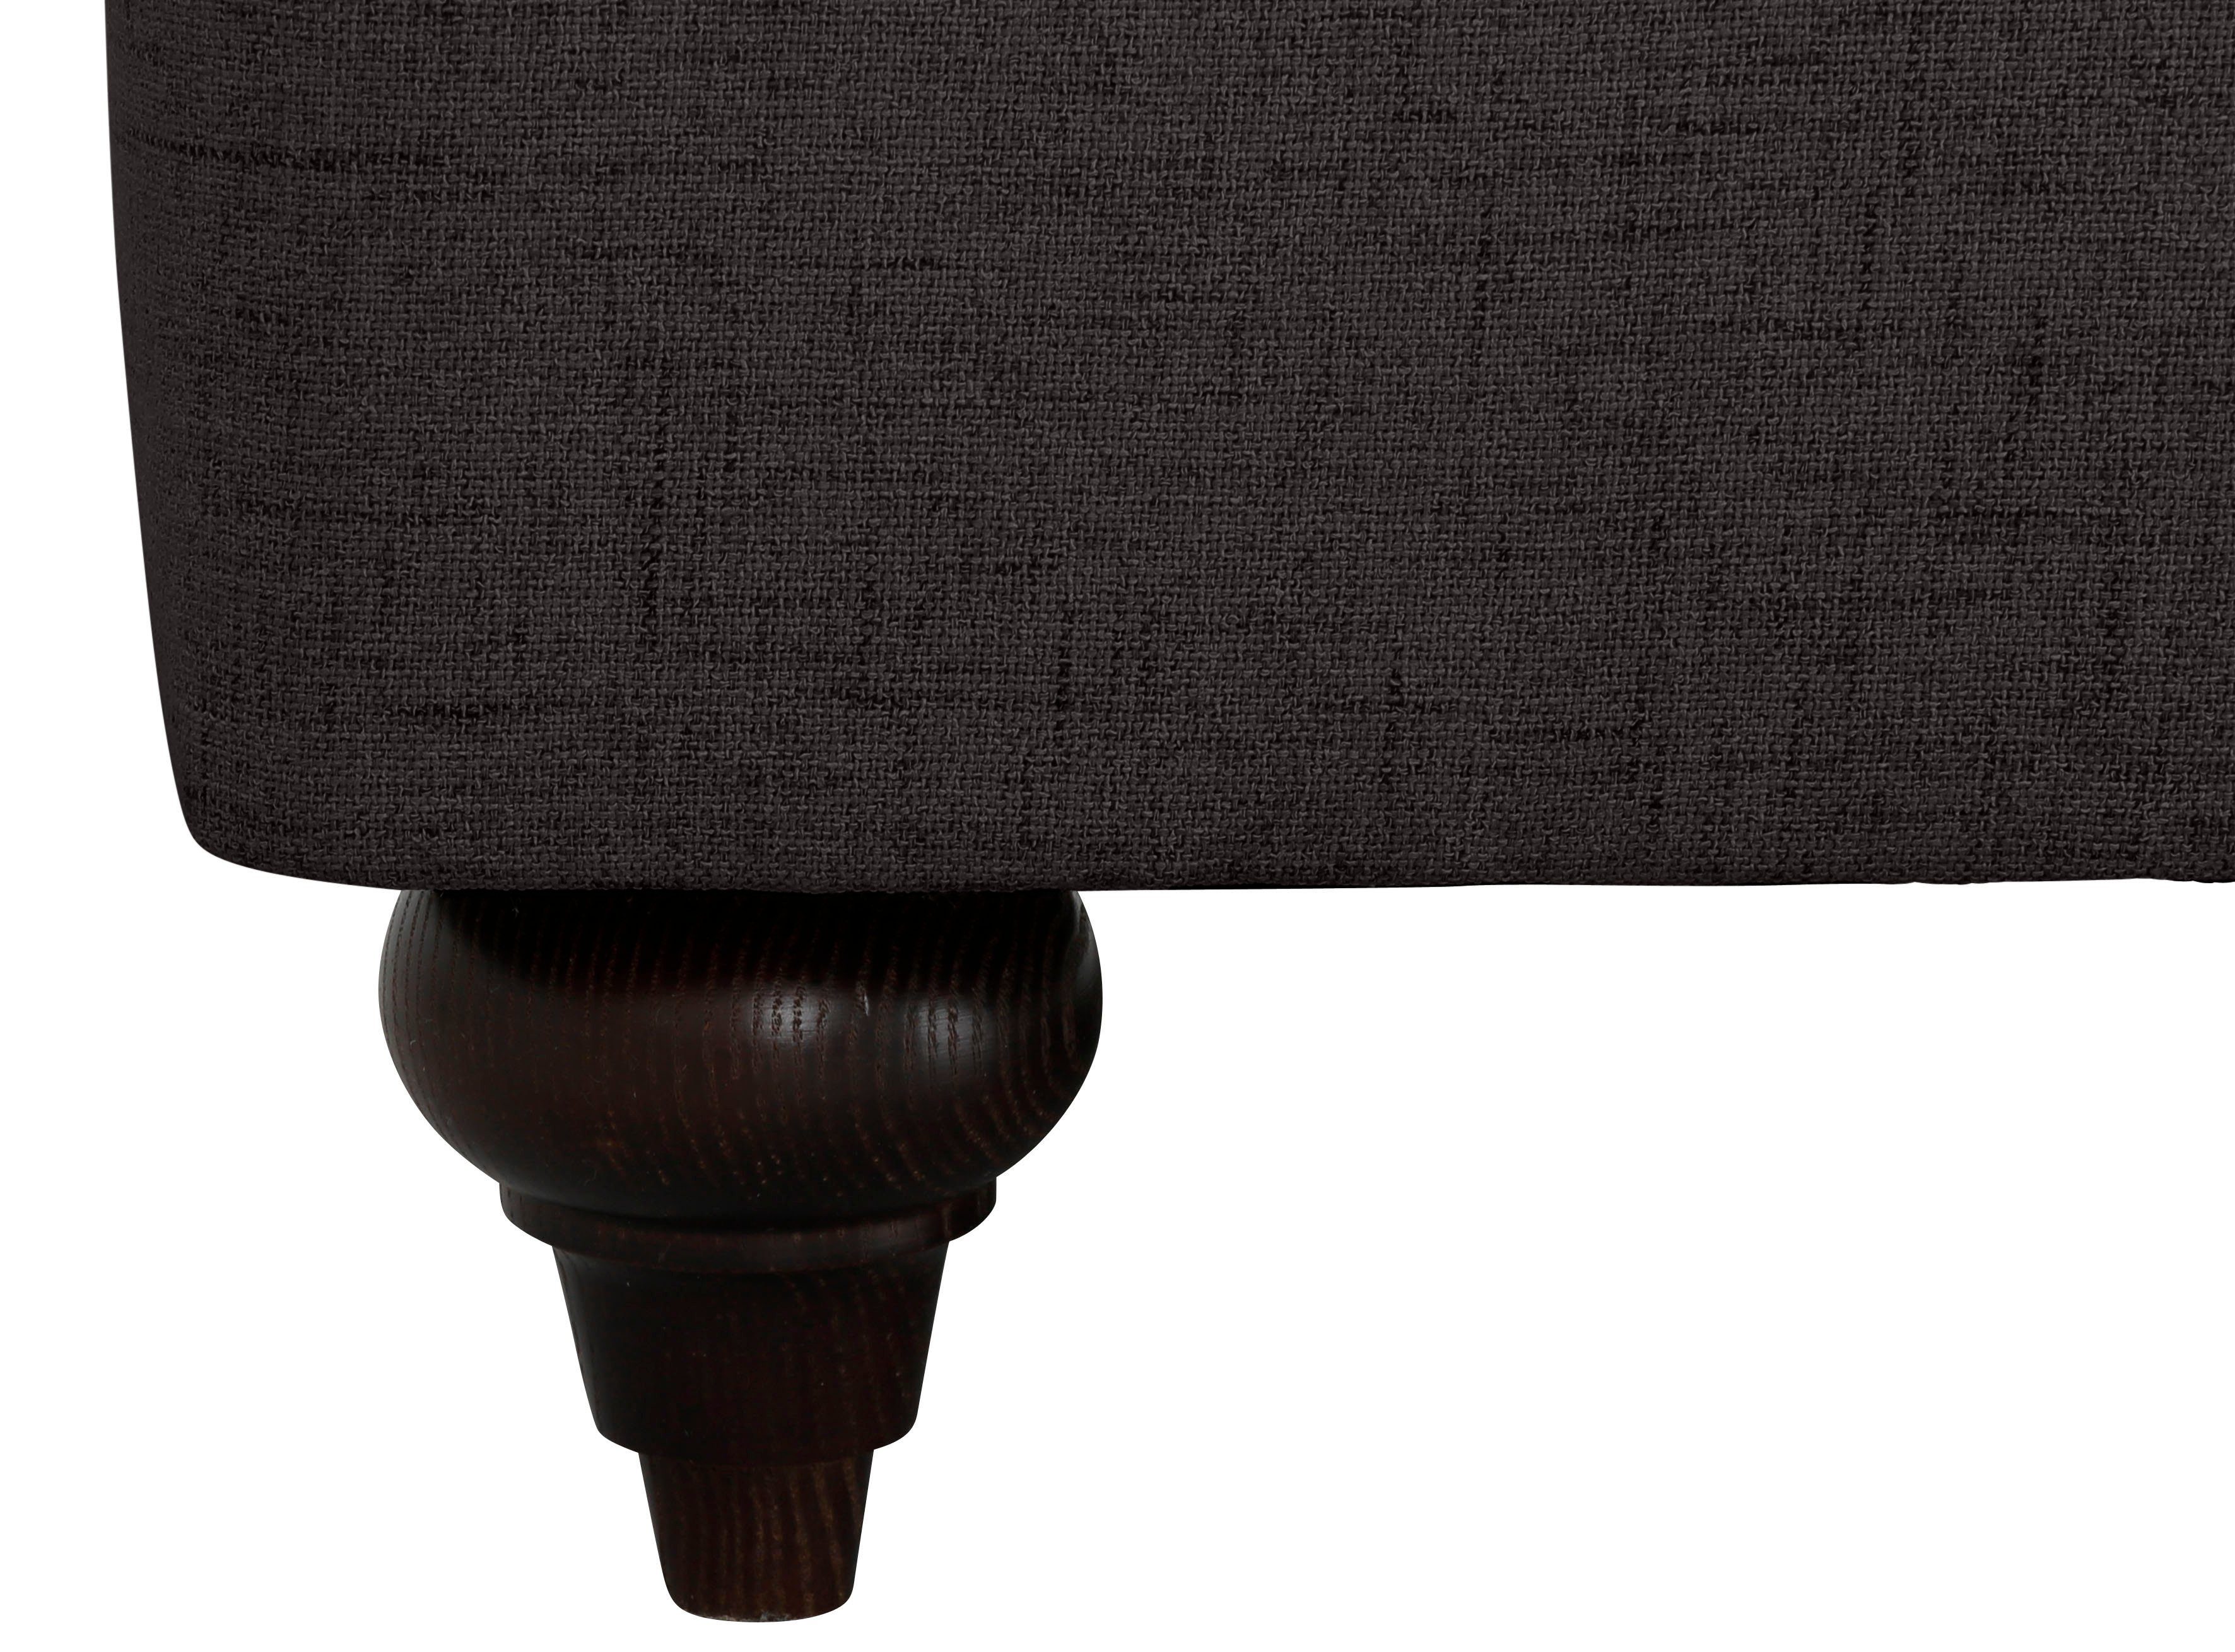 Home affaire Farben Bloomer, erhältlich mit hochwertigem Sessel brown dark Kaltschaum, in verschiedenen